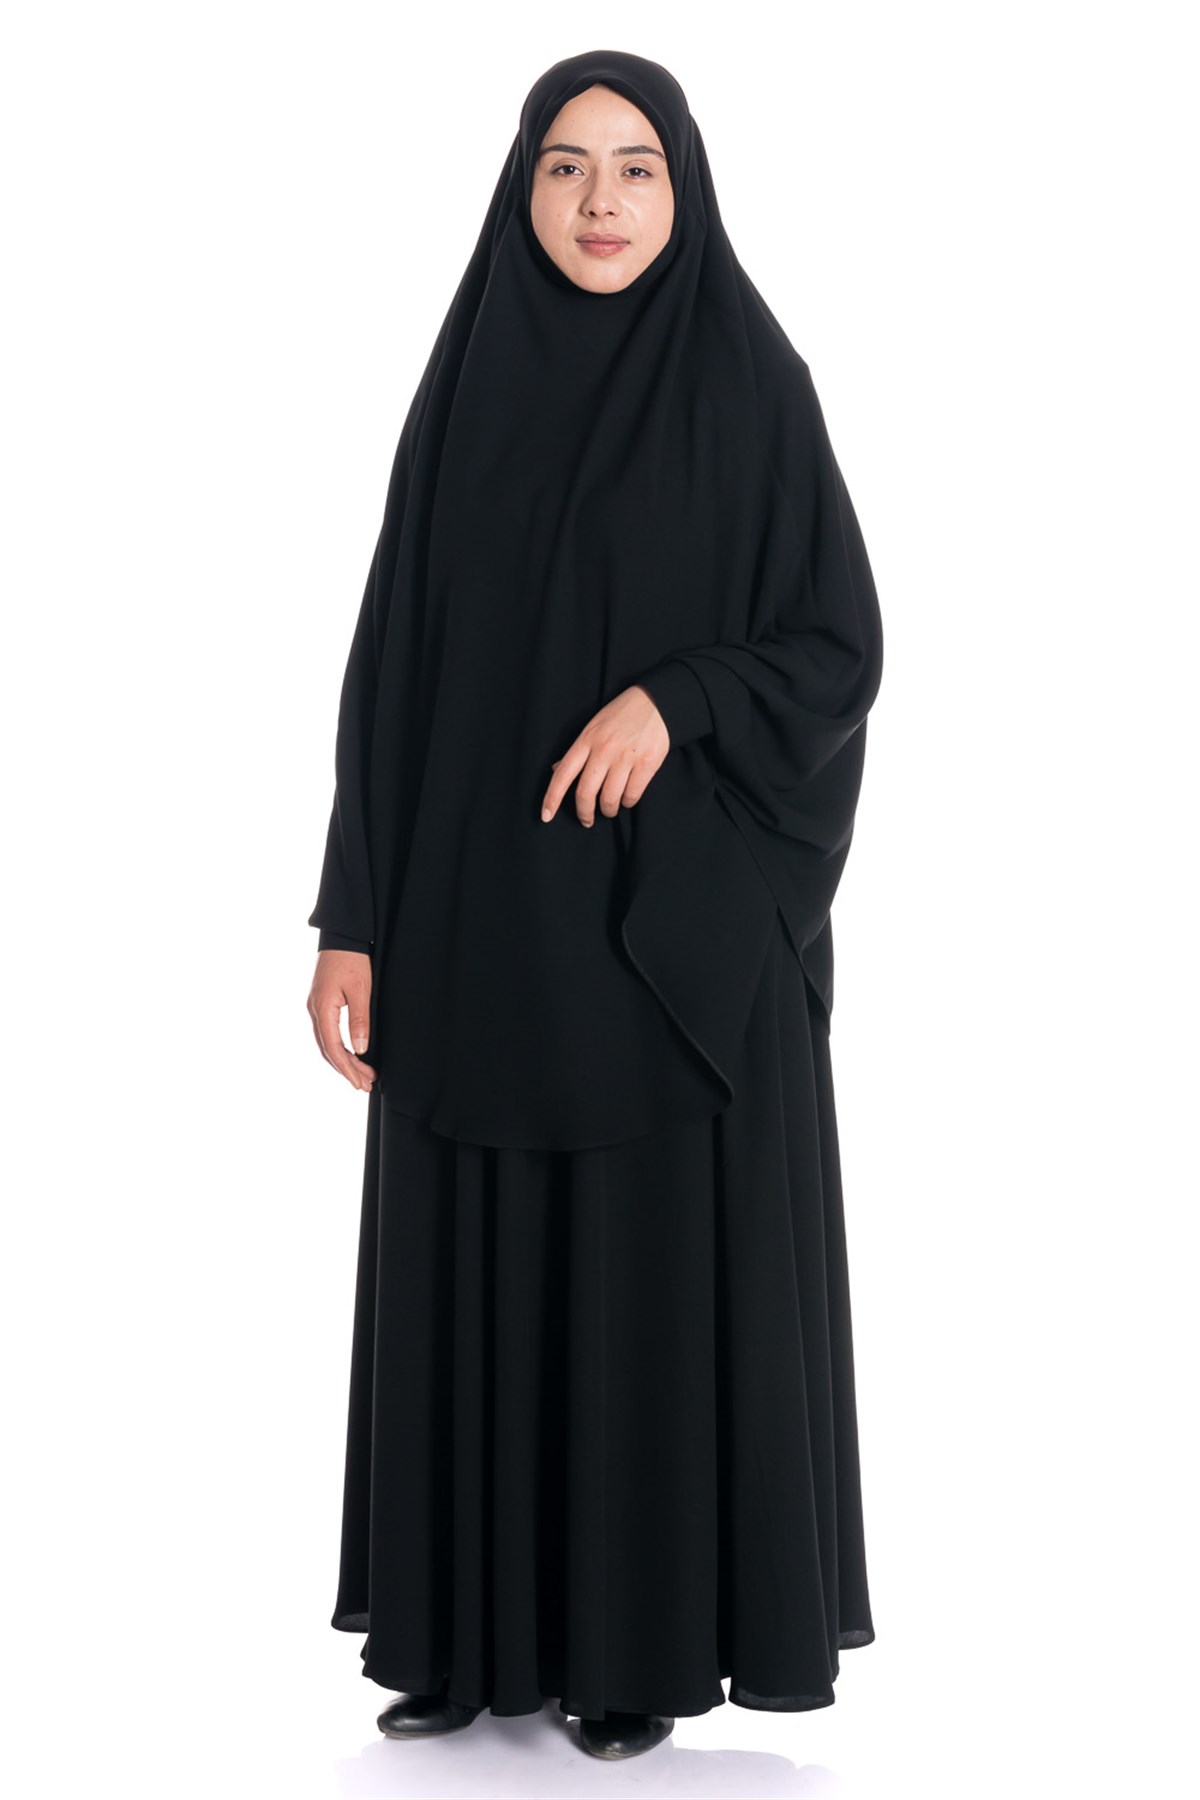 Sultanbaş Krep Peçeli Ayrı Çarşaf Siyah Modeli ve Fiyatı